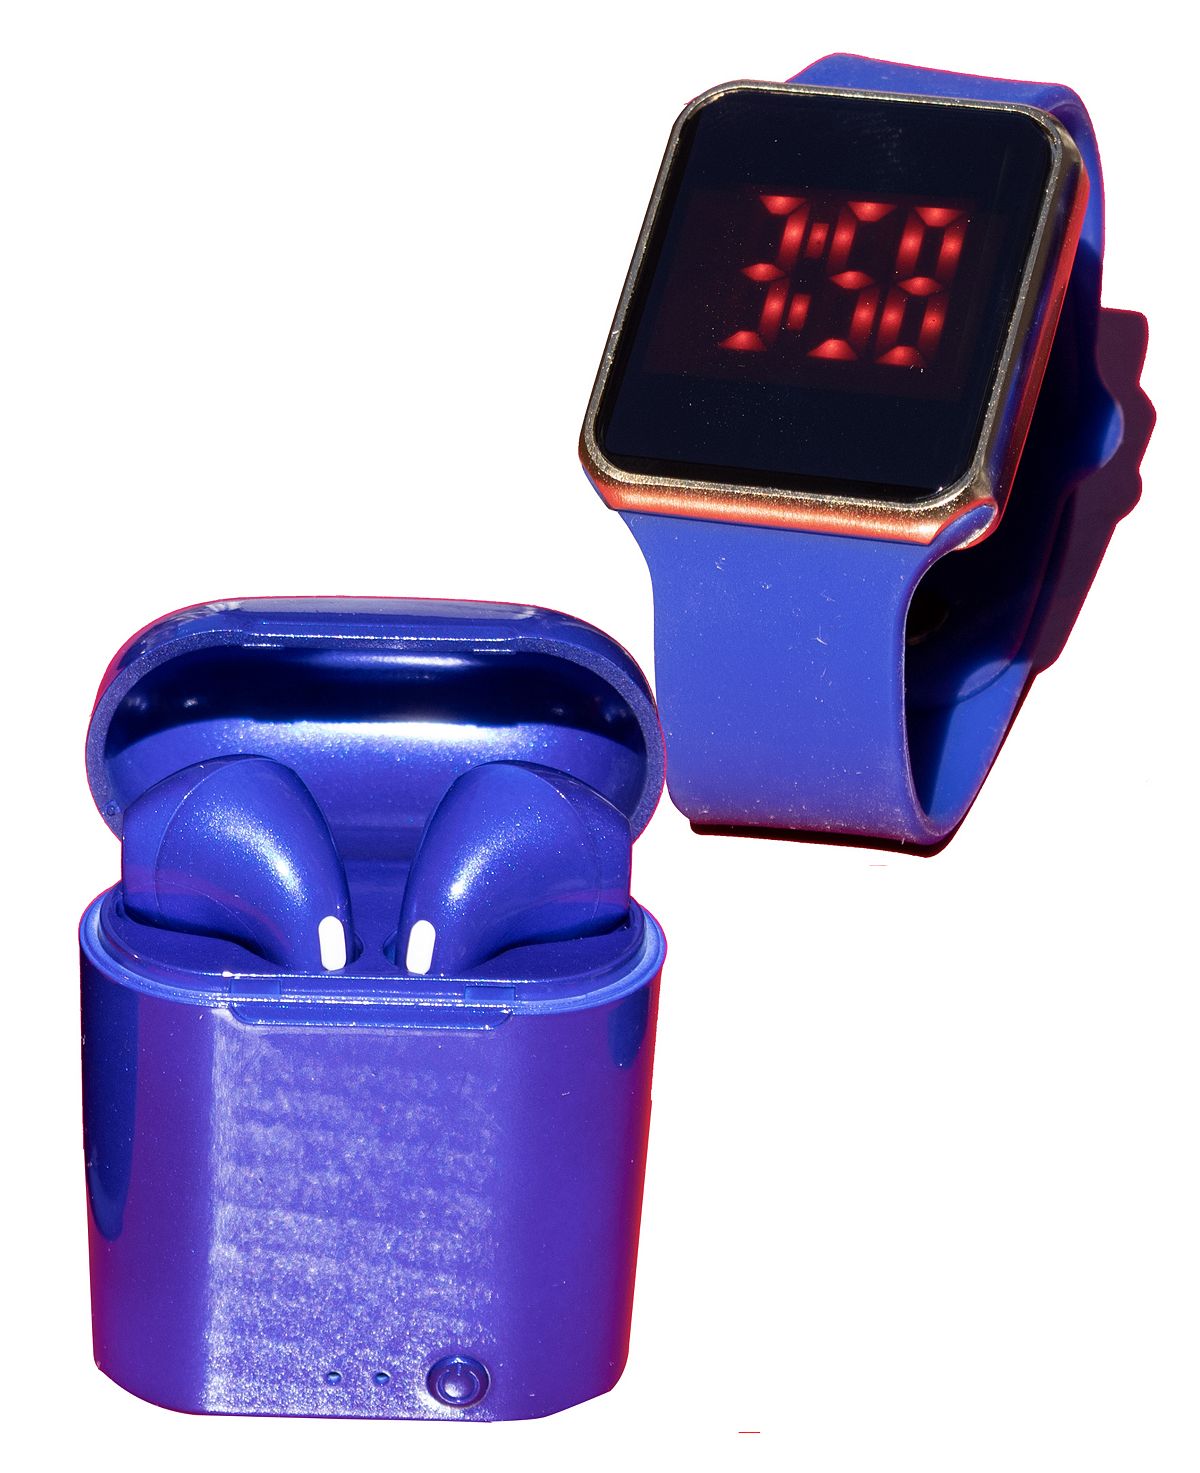 Унисекс светодиодные сенсорные часы и беспроводные наушники с портативным чехлом для зарядки Ztech набор watch